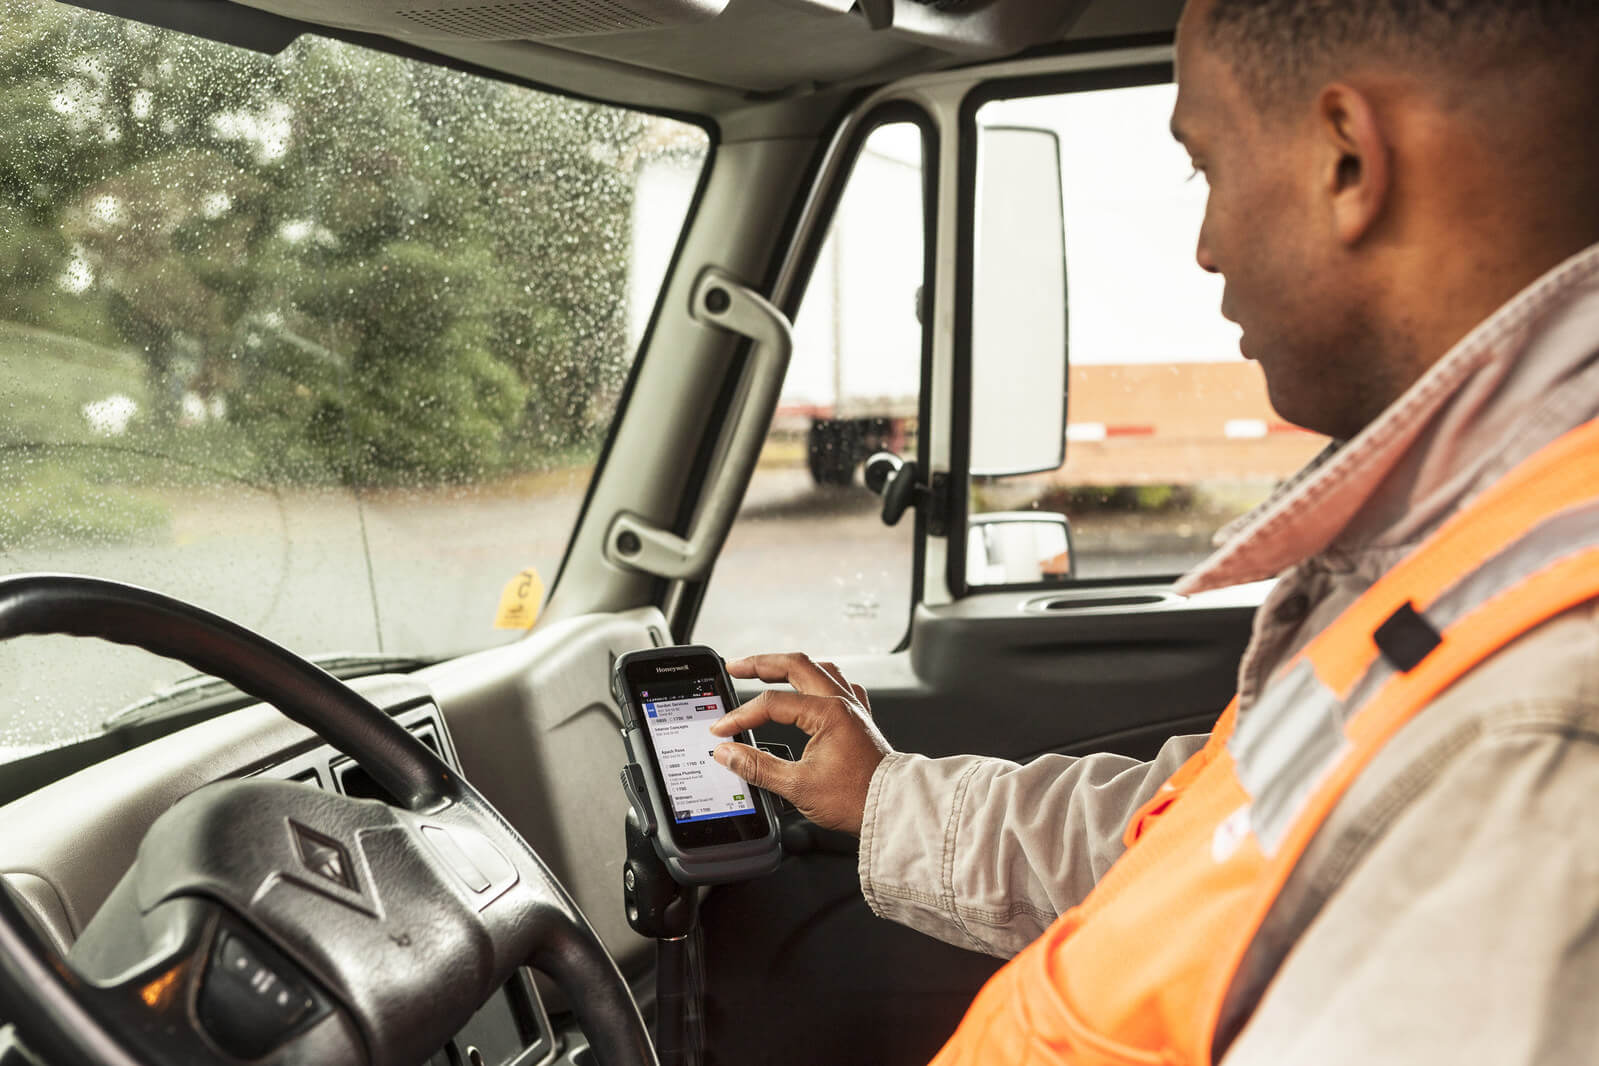 Honeywells software for truck drivers runs on Android-based mobile